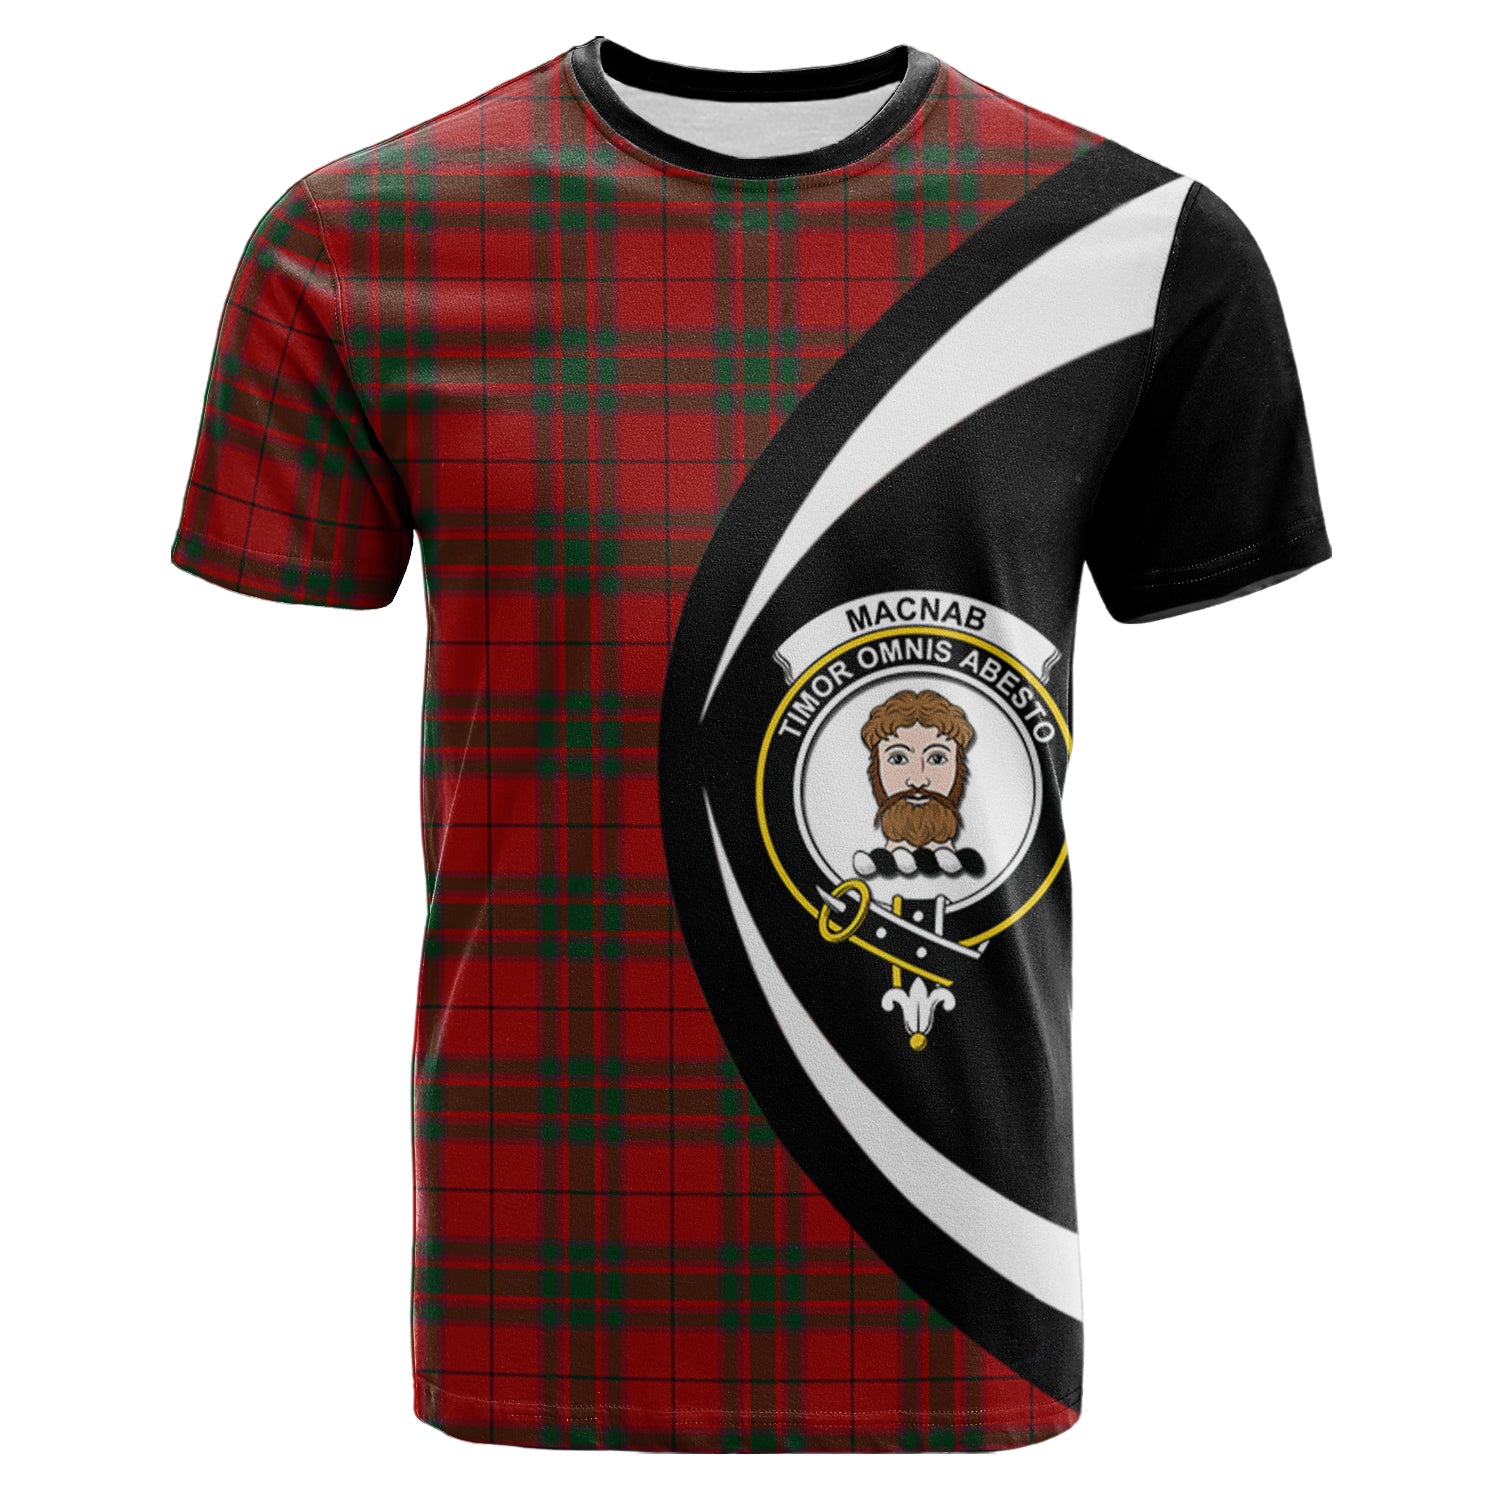 scottish-macnab-clan-crest-circle-style-tartan-t-shirt